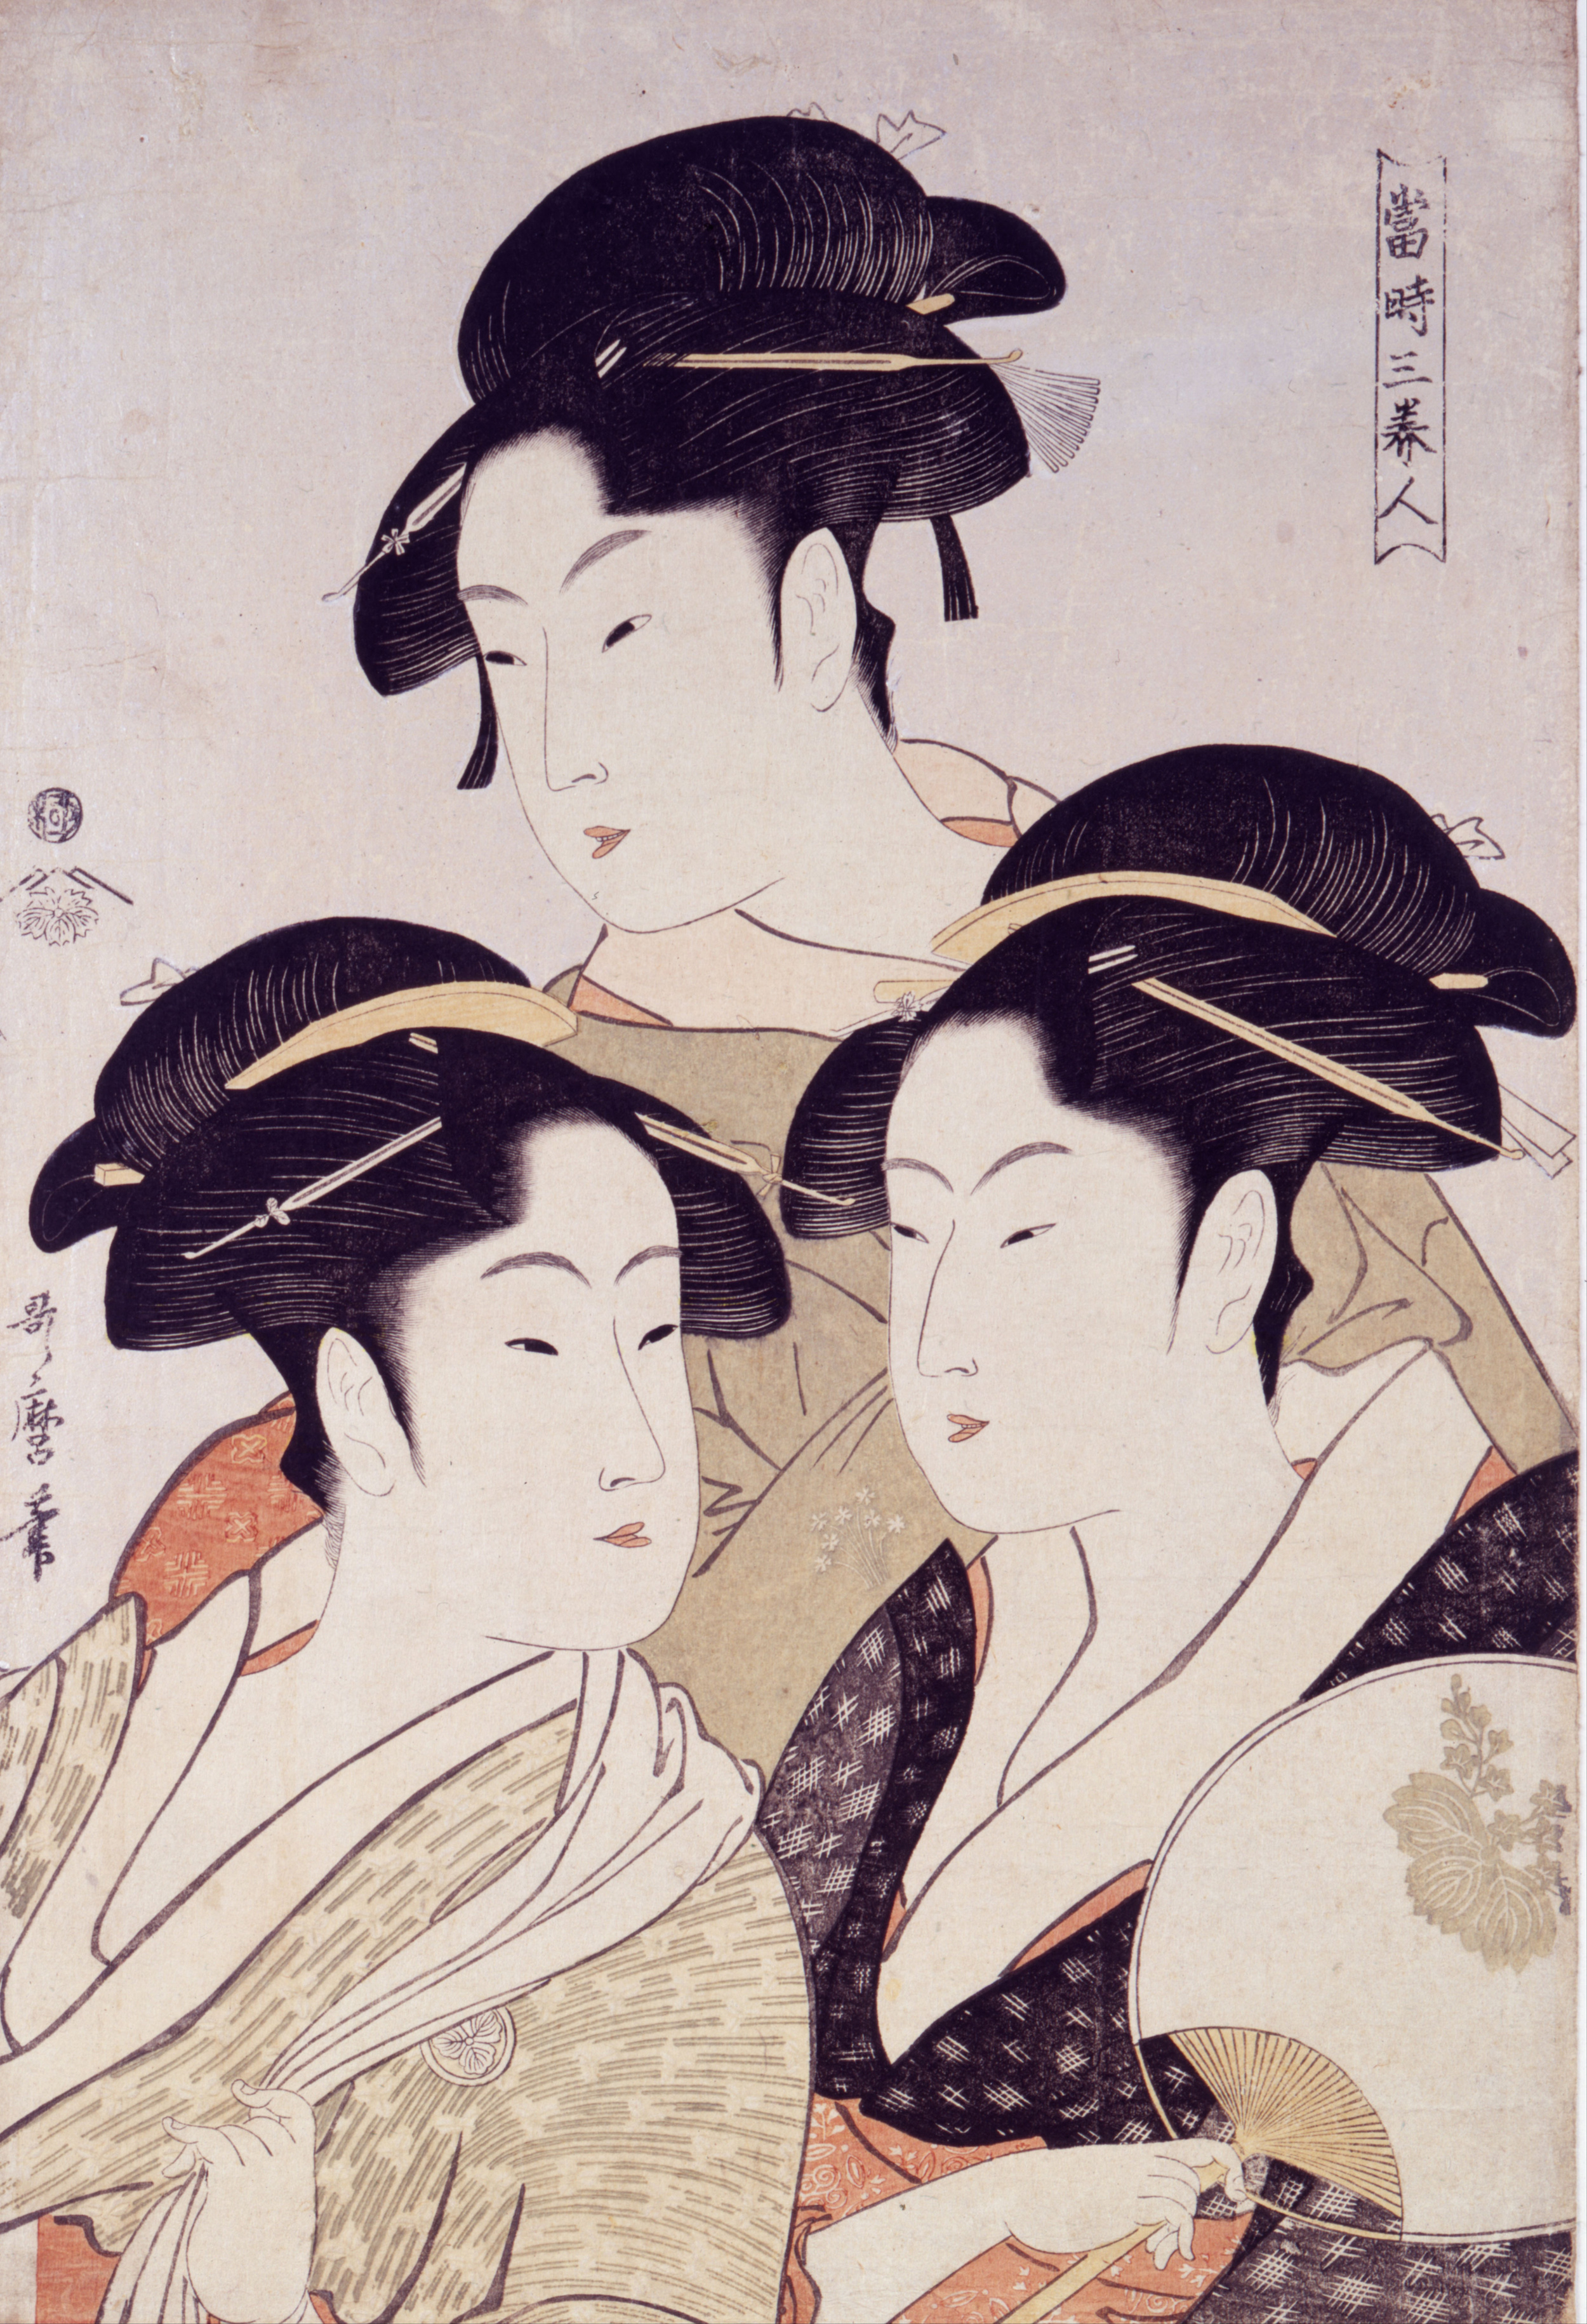 寬政三美女 by Kitagawa Utamaro - 大約1793 - 262 x 387 毫米 